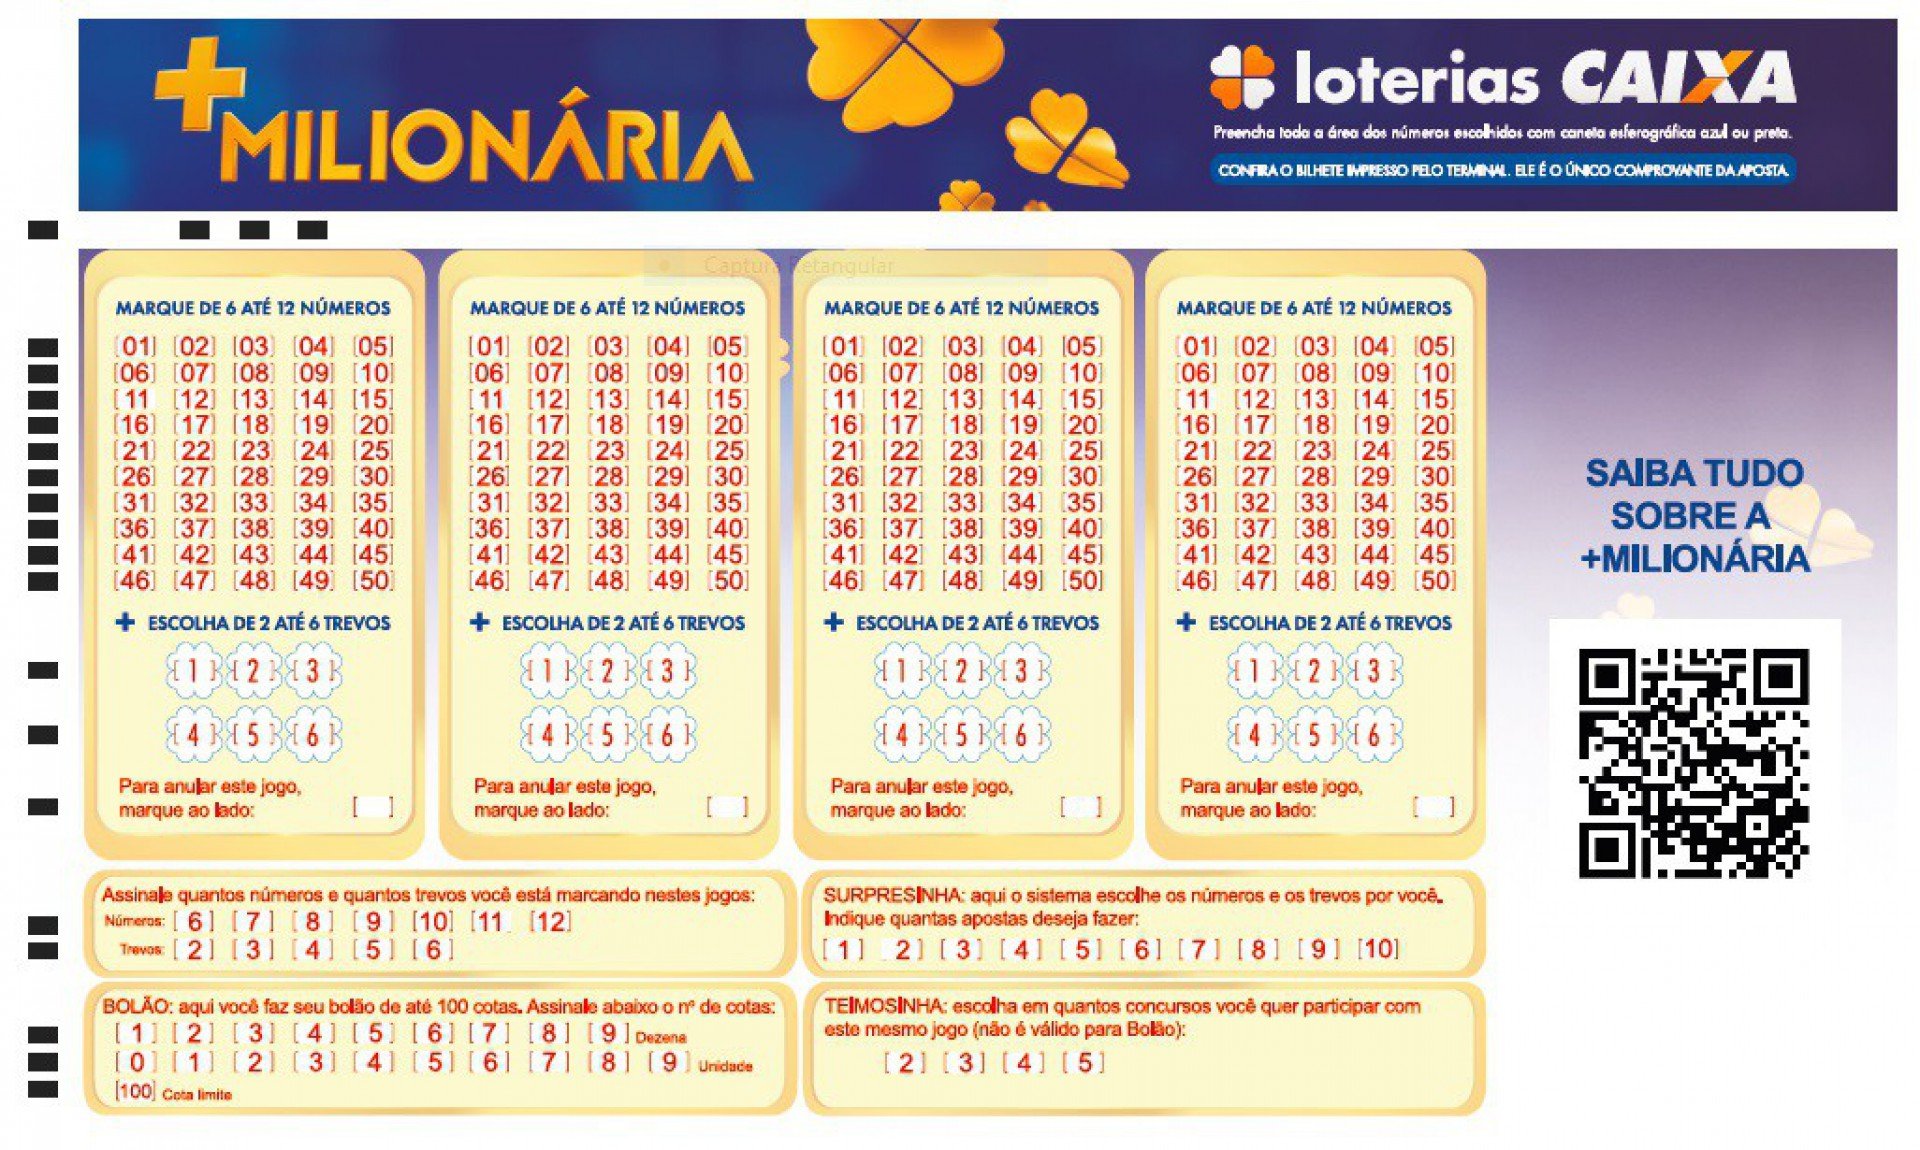 2 formas de apostar nas loterias da Caixa online sem sair de casa